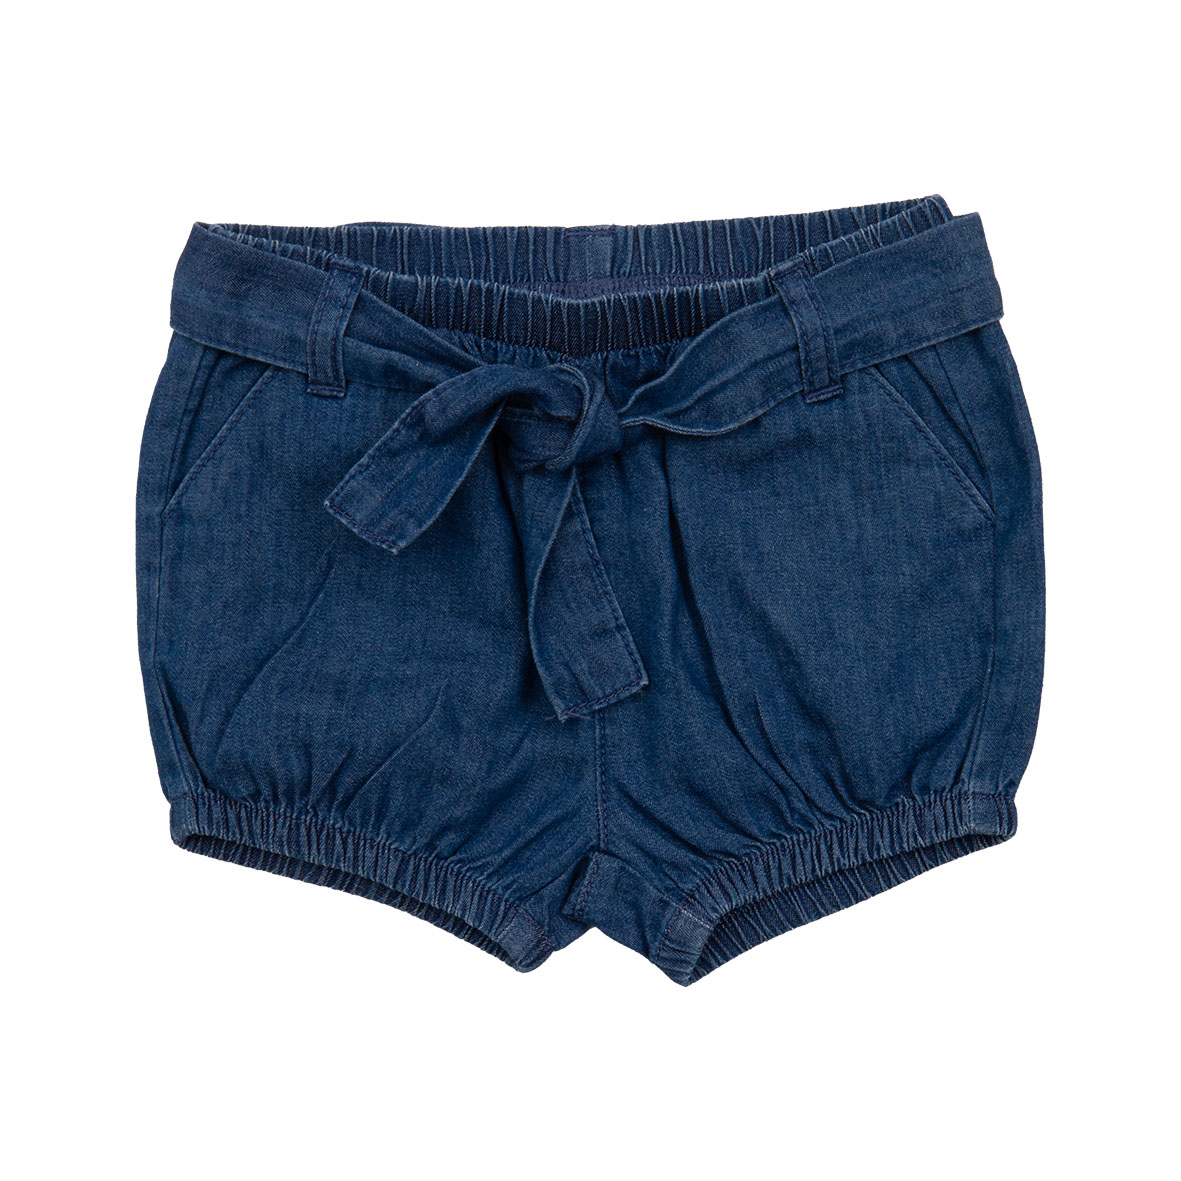 Mawi shorts chambray con cintura - Mawi